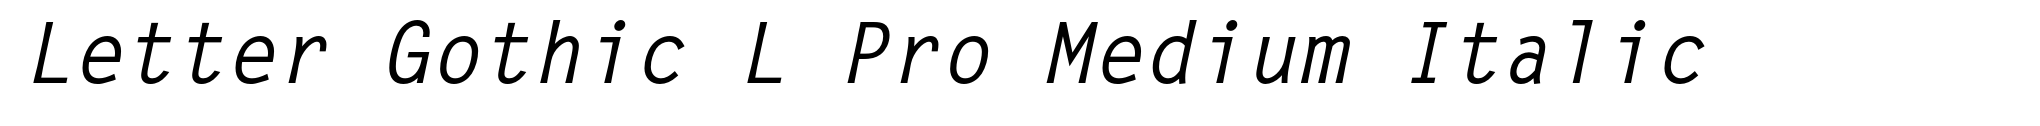 Letter Gothic L Pro Medium Italic image